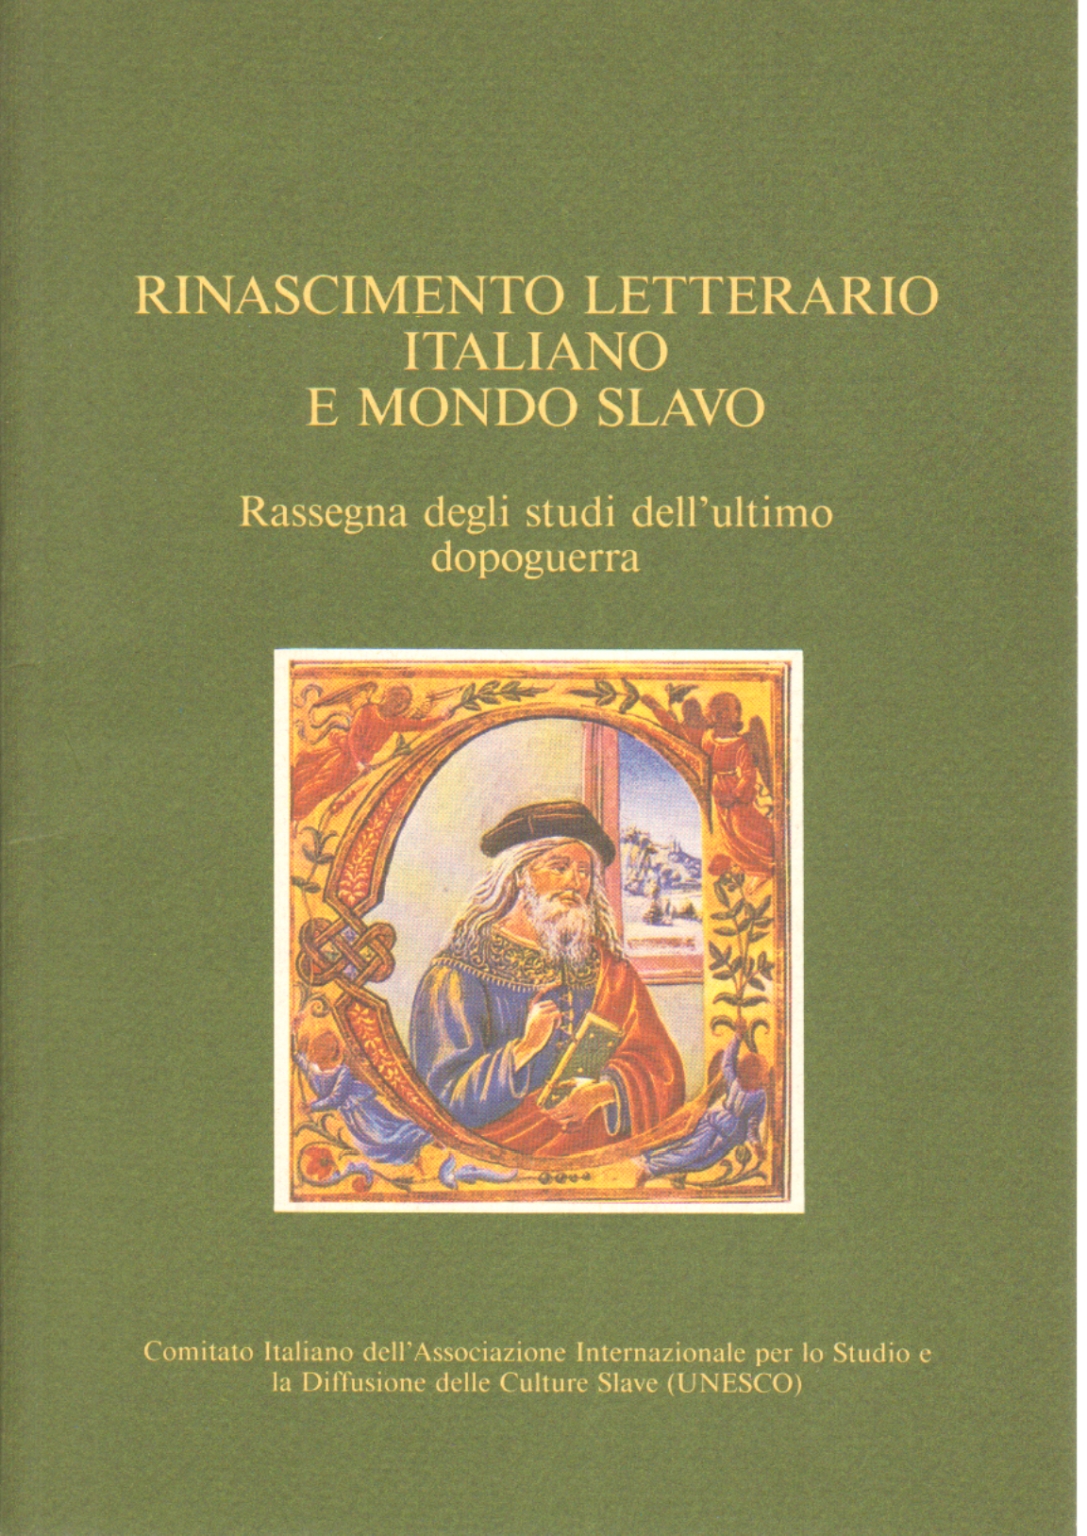 Rinascimento letterario italiano e mondo slavo, Sante Graciotti Emanuela Sgambati